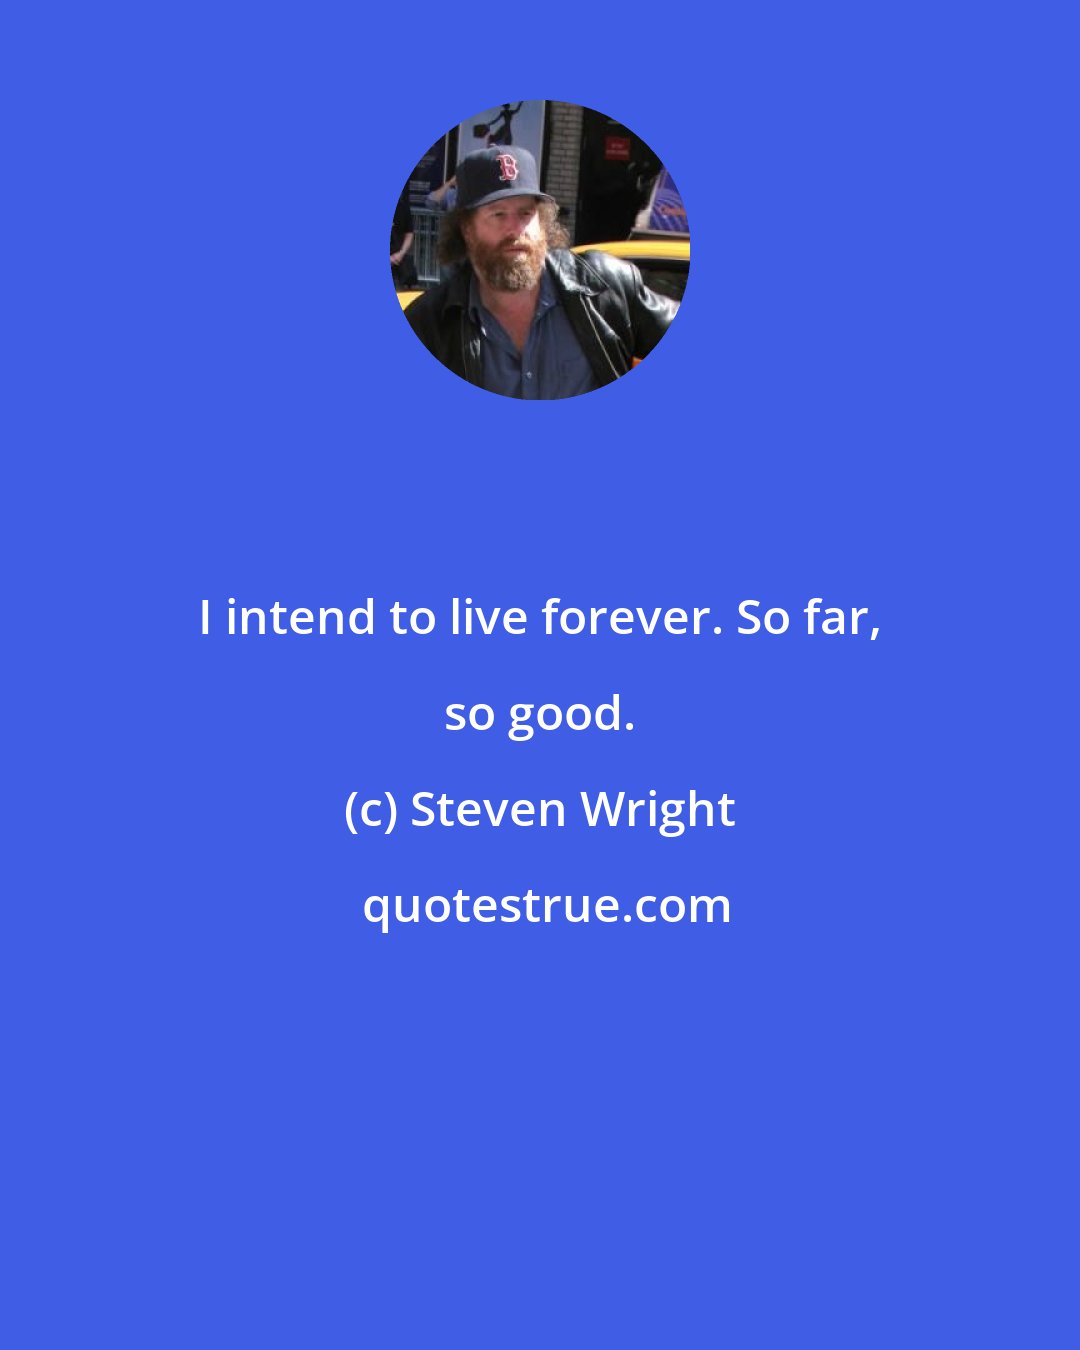 Steven Wright: I intend to live forever. So far, so good.